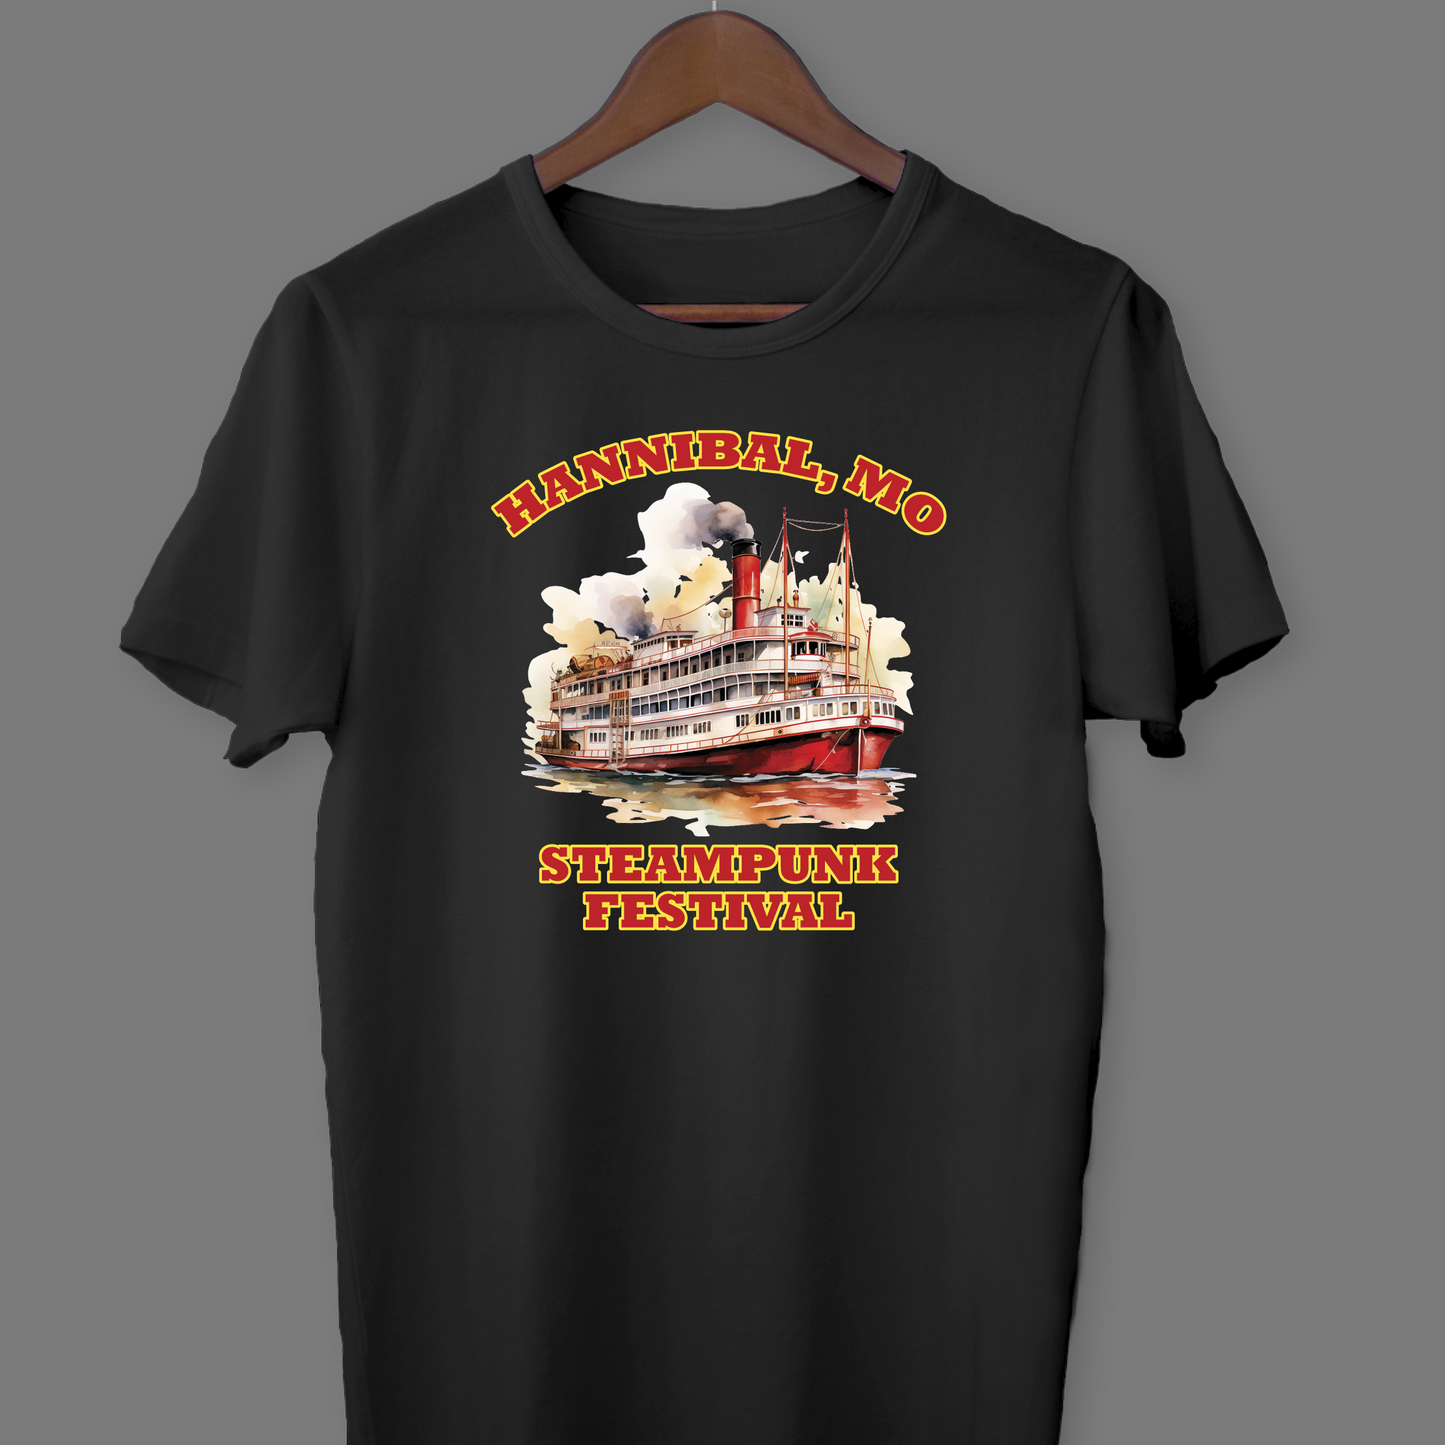 #4019 Hannibal Fest - Steampunk River T-shirt